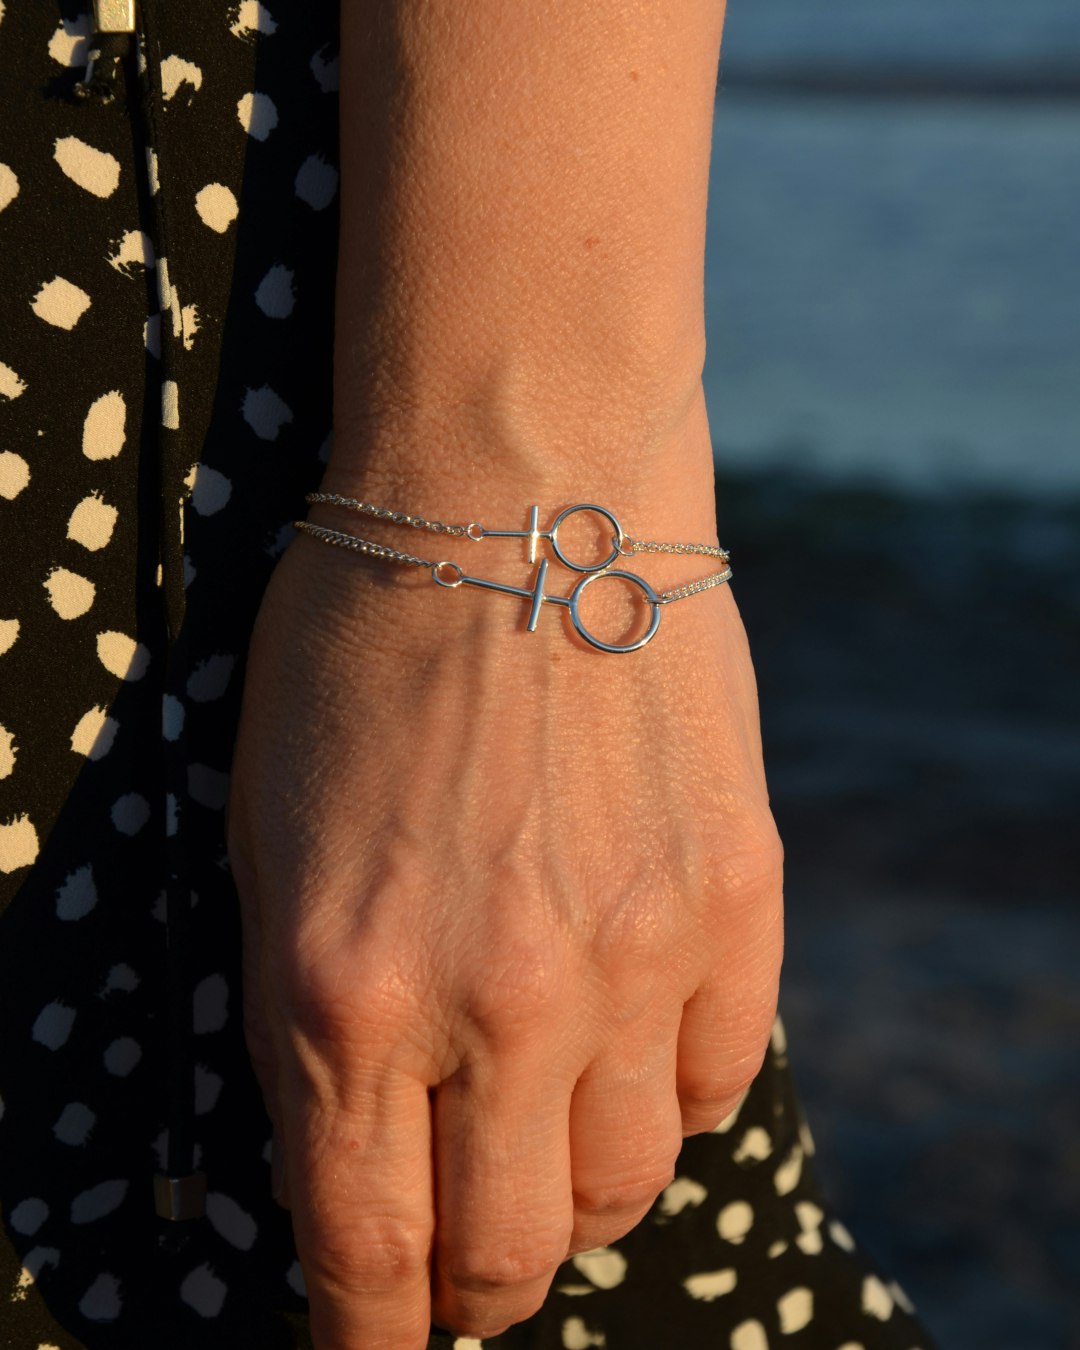 Silverarmband med kvinnotecknet  Venus. Två stycken armband på en hand.